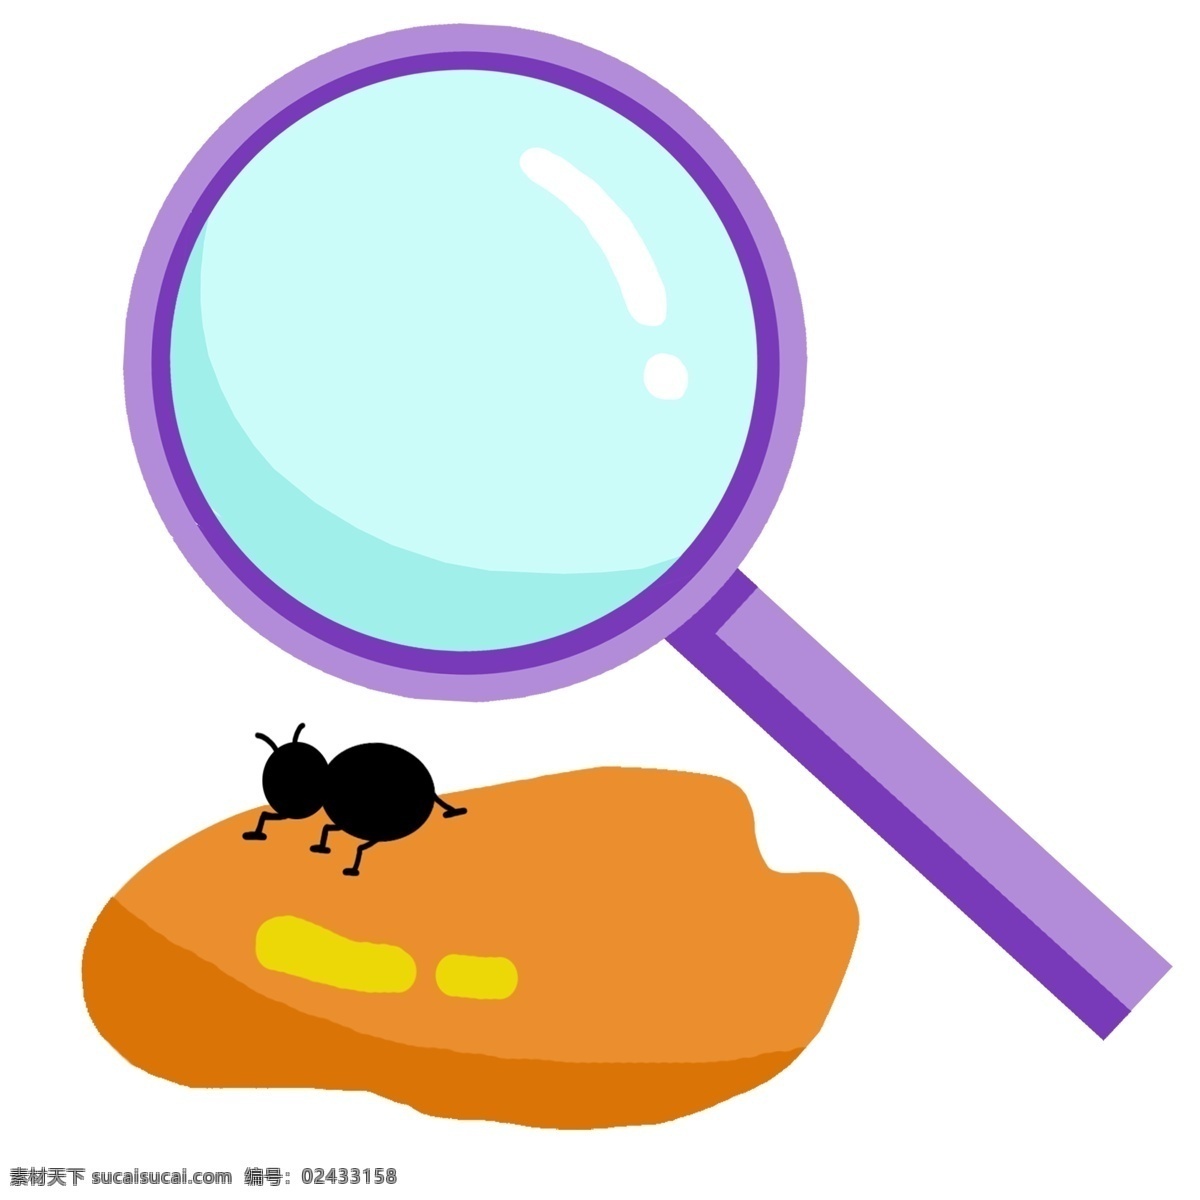 紫色 放大镜 插图 紫色的放大镜 黑色的小蚂蚁 装饰放大镜 科学放大镜 学习工具 橙色的糖块